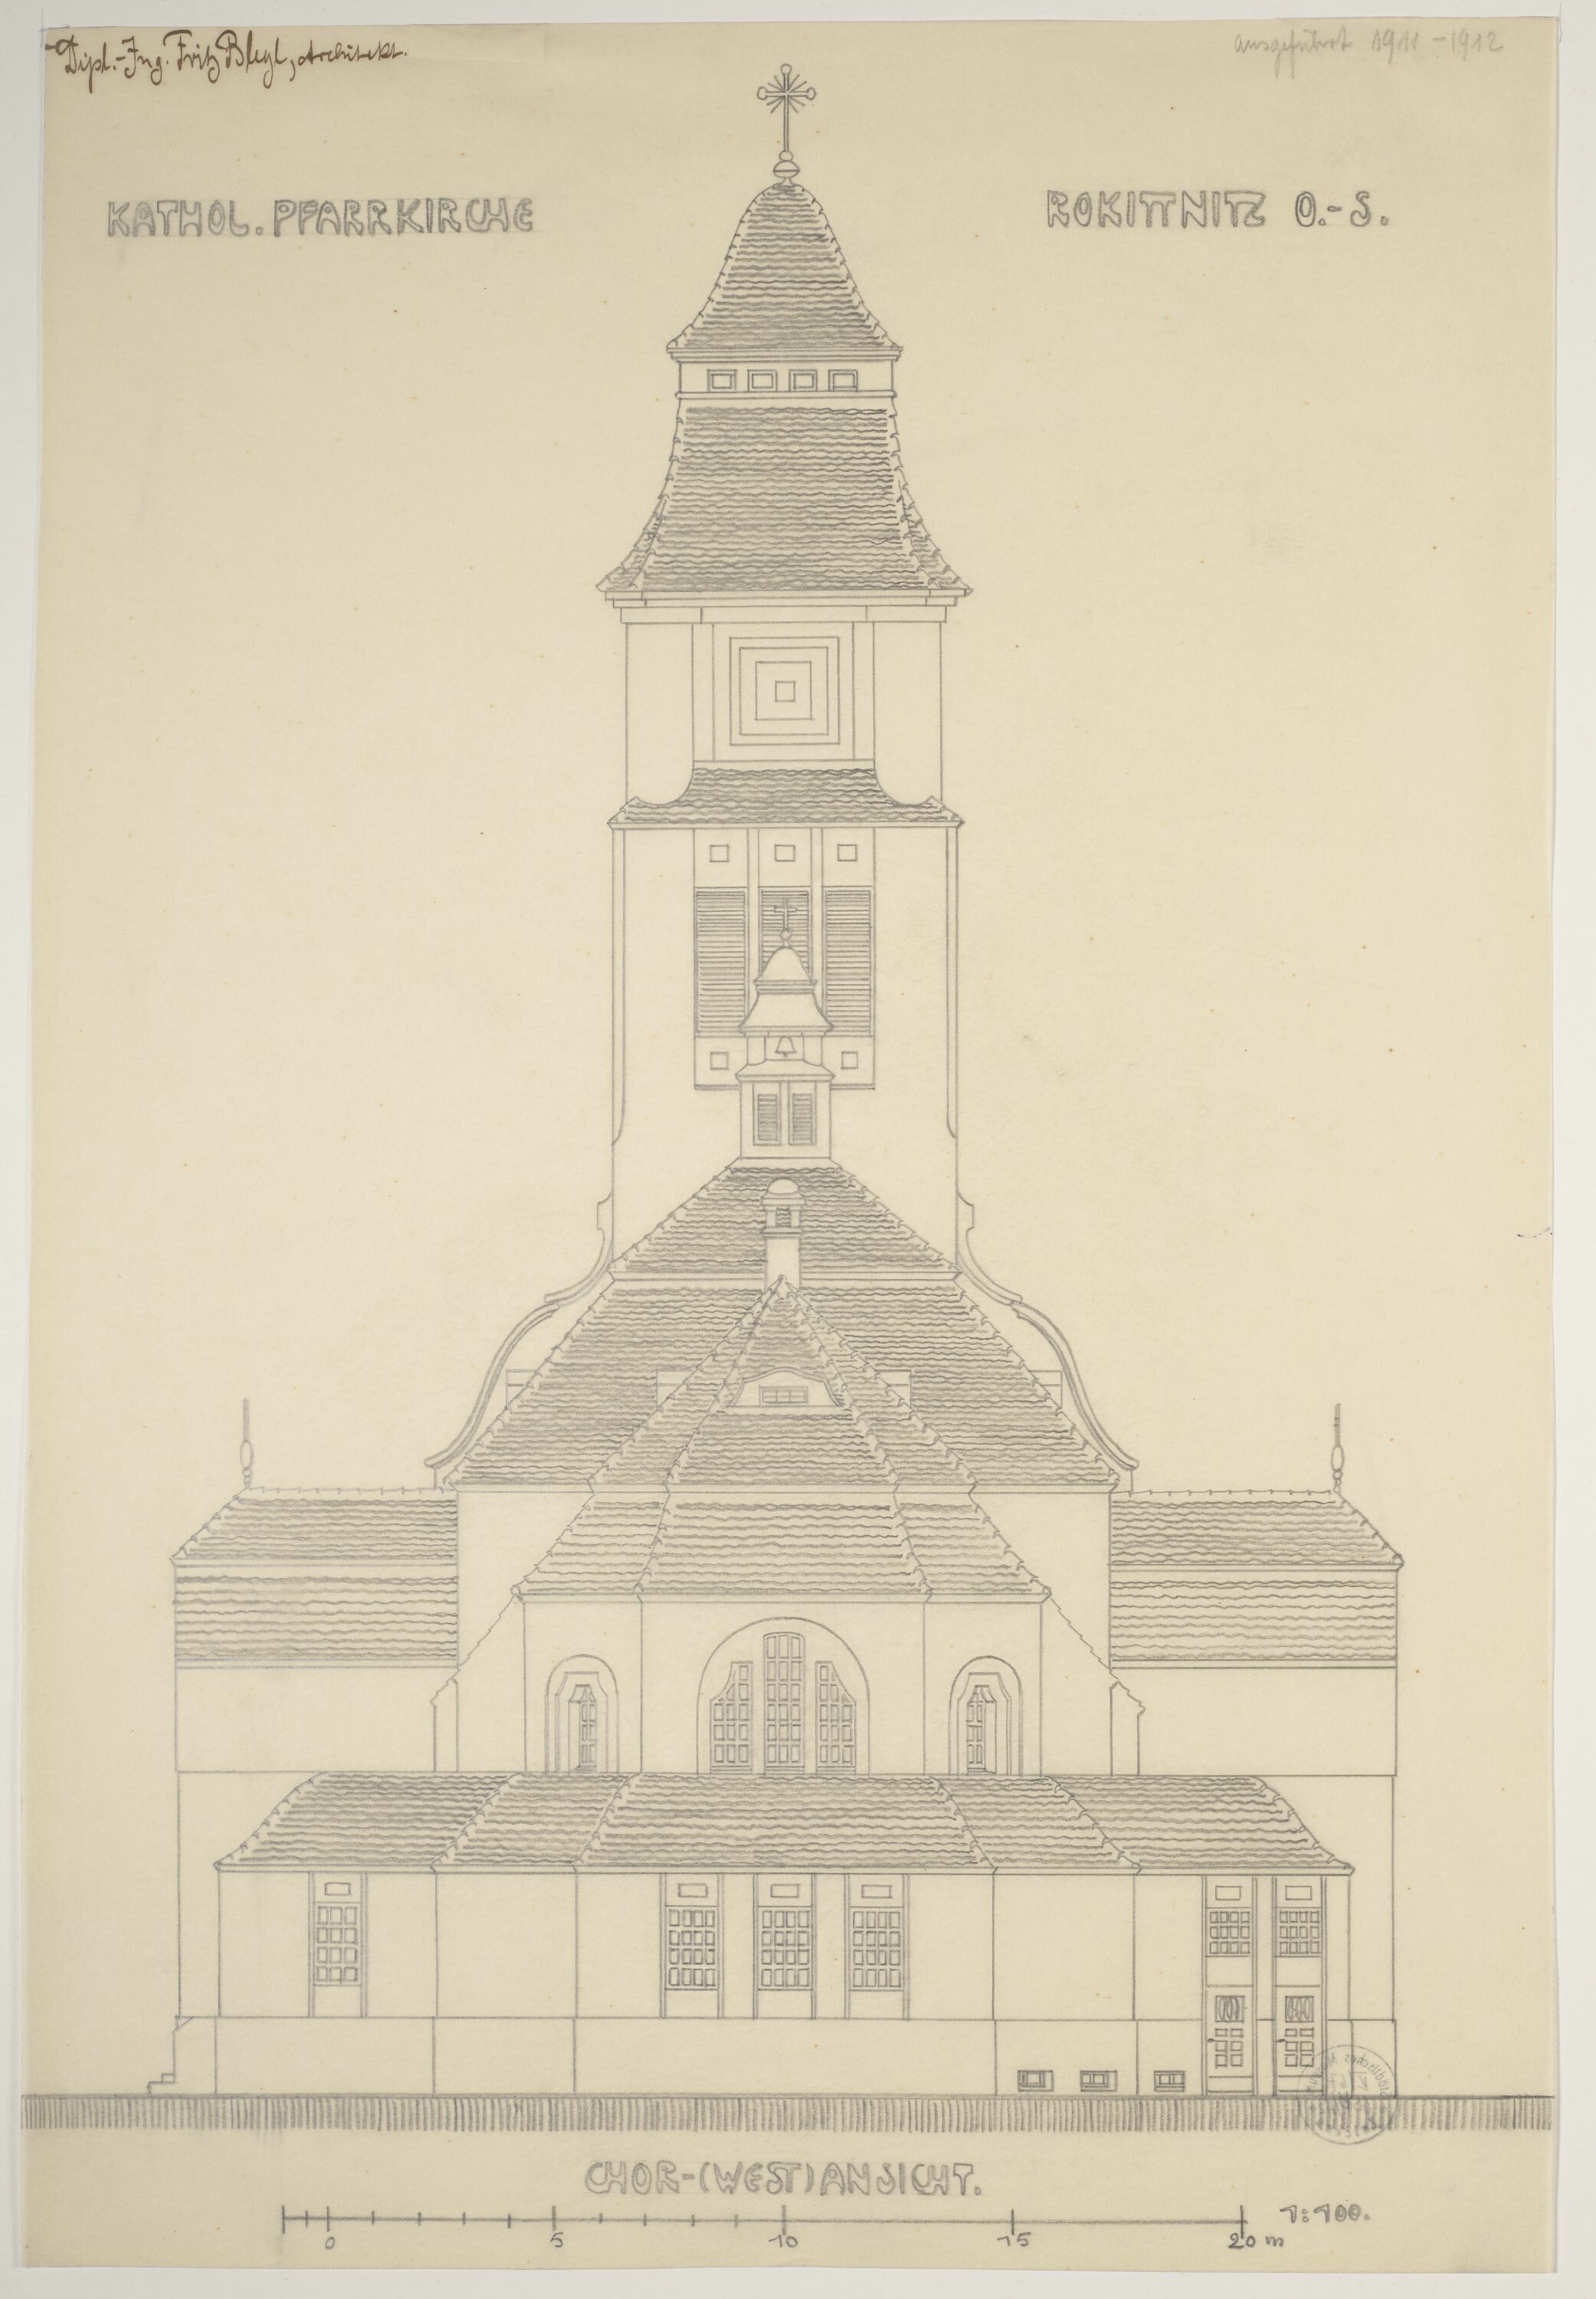 Katholische Pfarrkirche in Rokittnitz, Oberschlesien, Chor- (West) Ansicht, Entwurf ausgeführt 1911-1912 (© Bleyl, Berlin/Solingen RR-F)